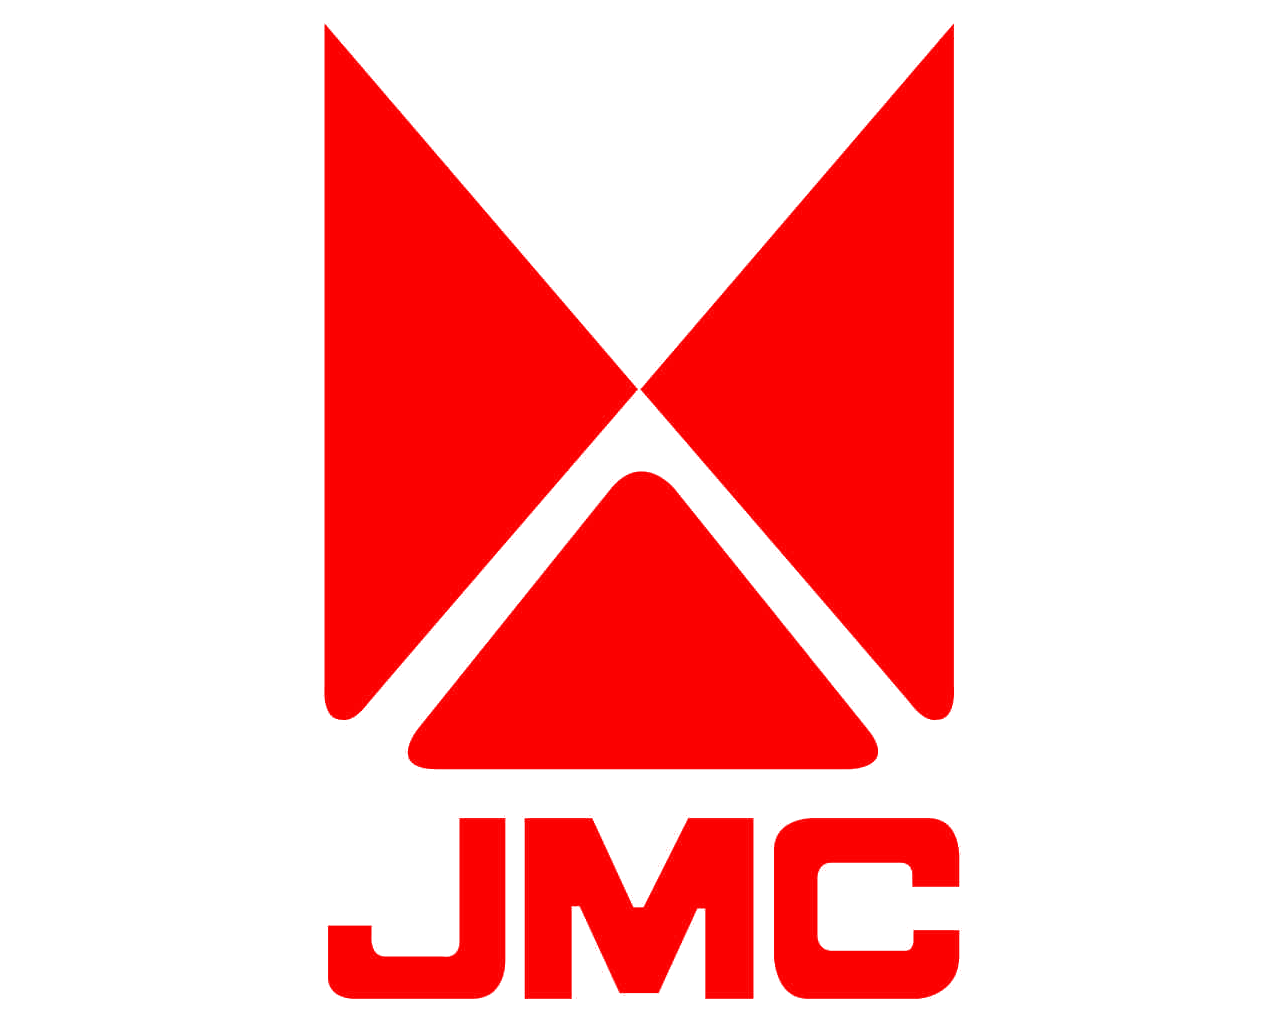 Подшипник выключения сцепления / Центральный выключатель для JMC: купить по лучшим ценам